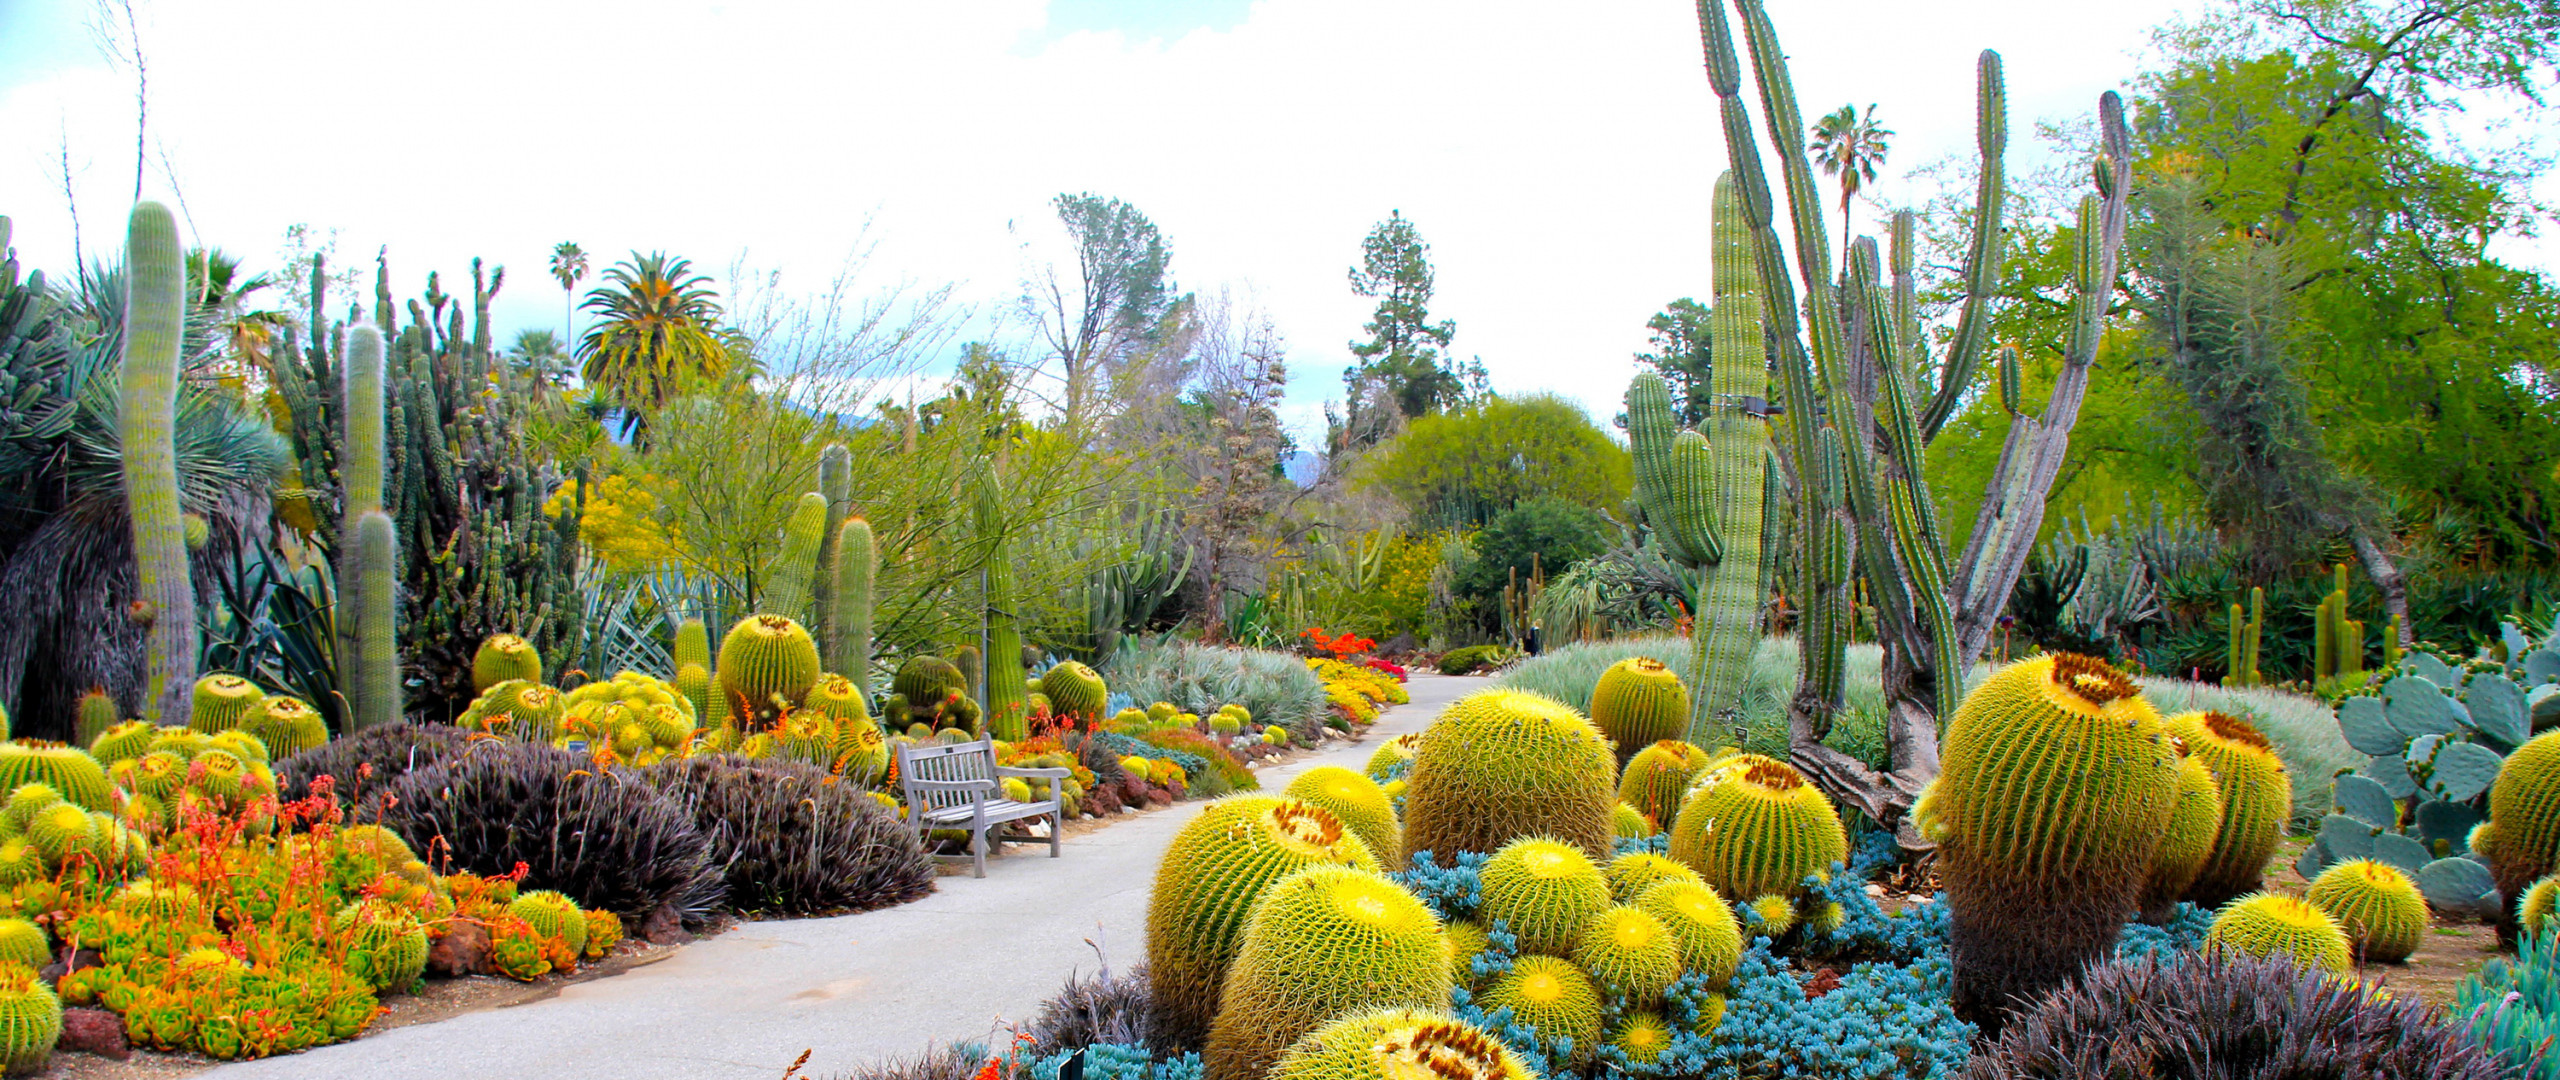 2560x1080  Wallpaper botanical garden, san marino, california, usa, garden,  cactus